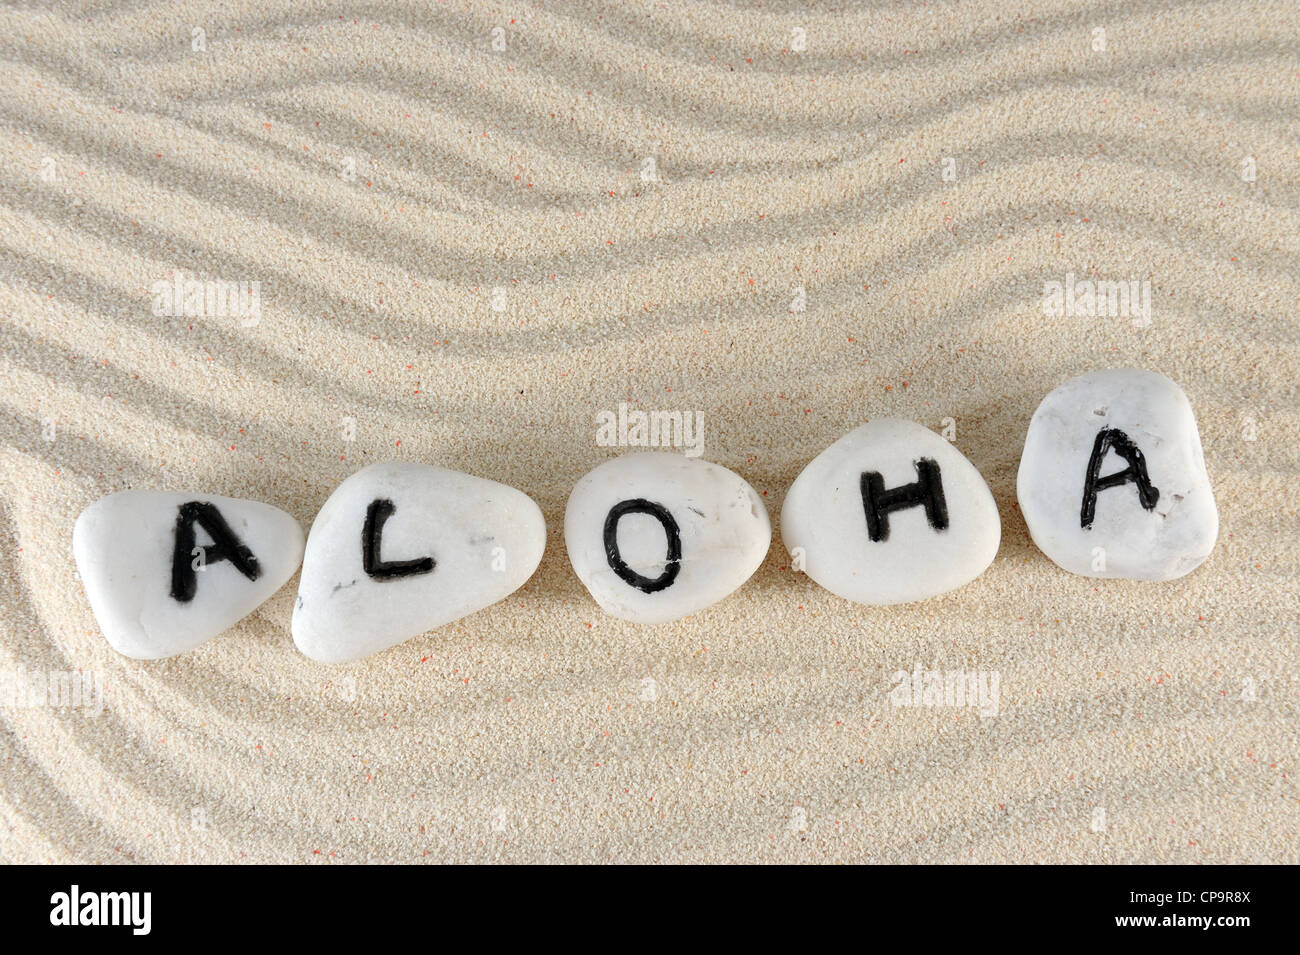 Aloha mot sur groupe de pierres sur le sable Banque D'Images